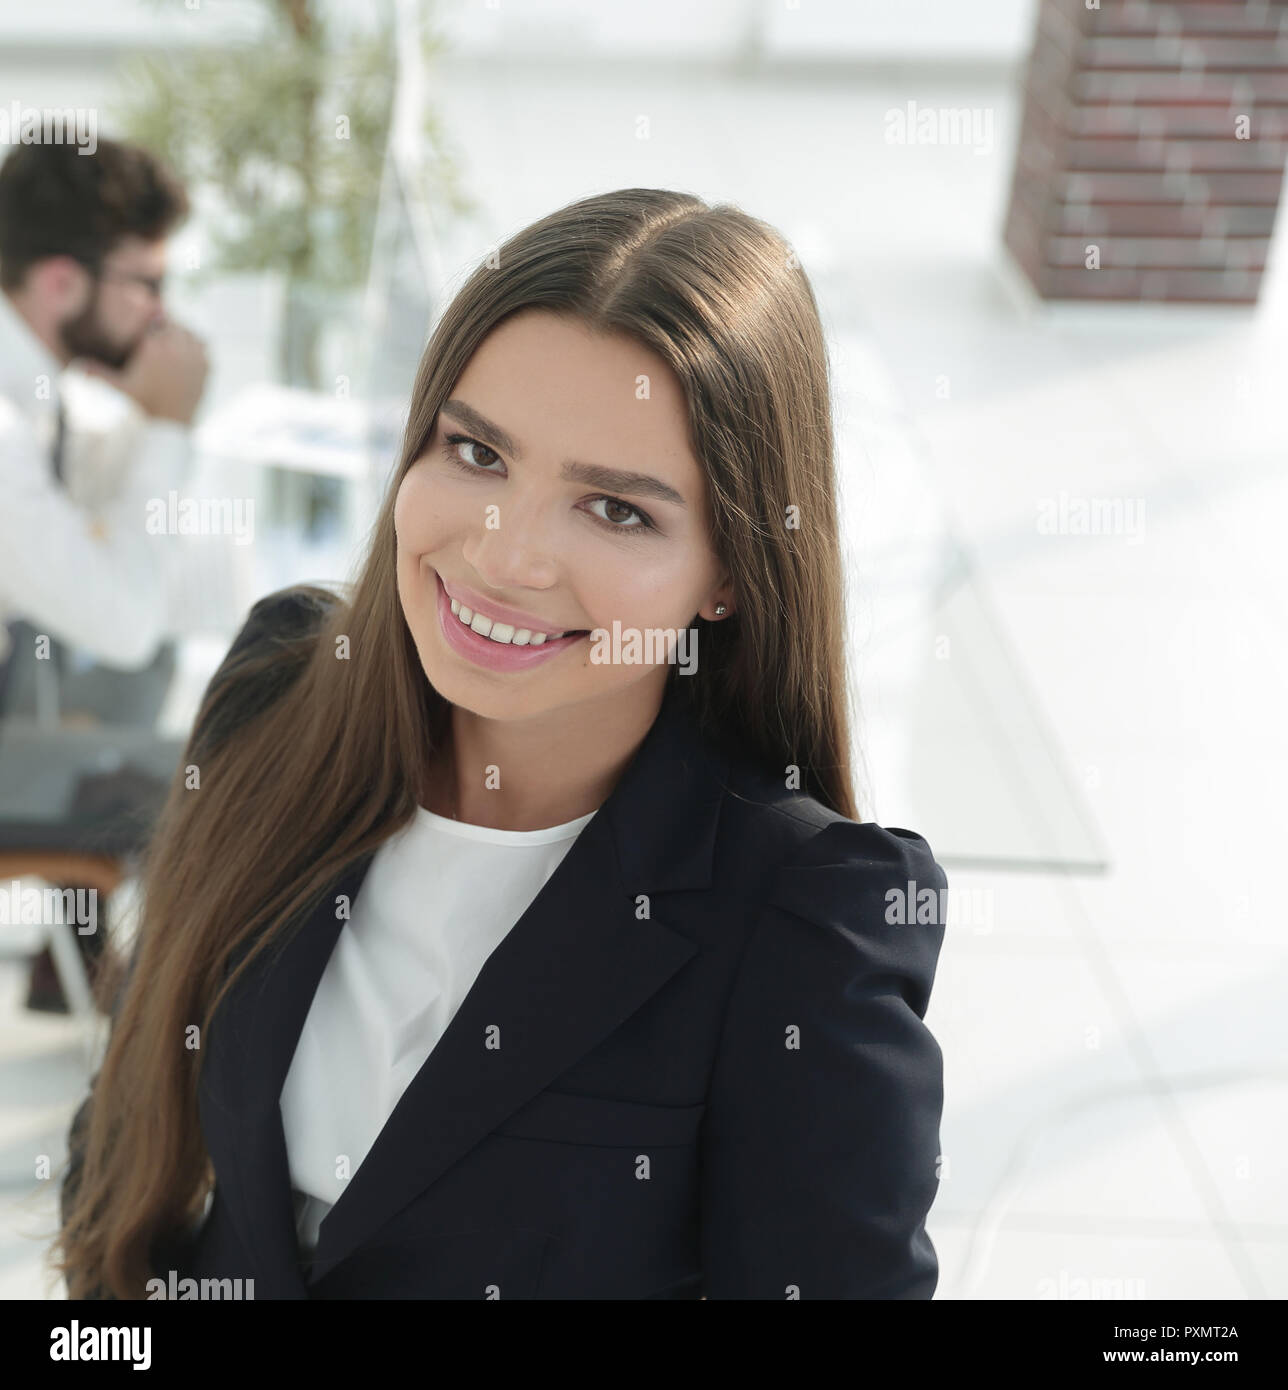 Weibliche Manager am Arbeitsplatz Stockfoto